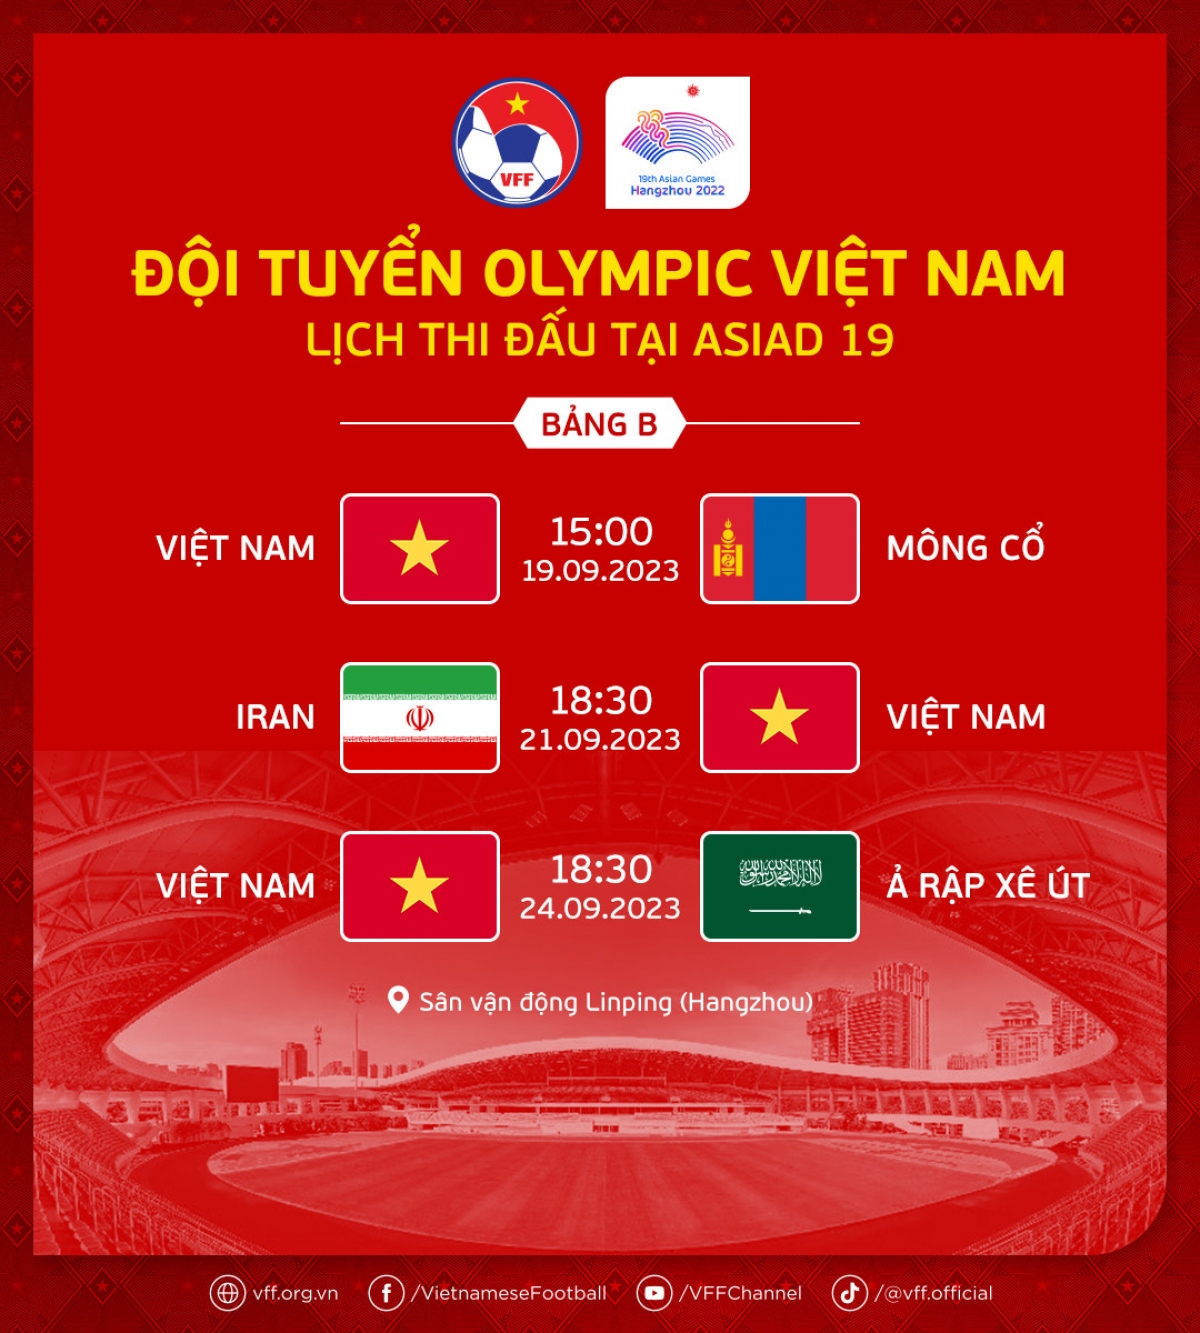 Lịch thi đấu của ĐT Olympic Việt Nam tại ASIAD 19